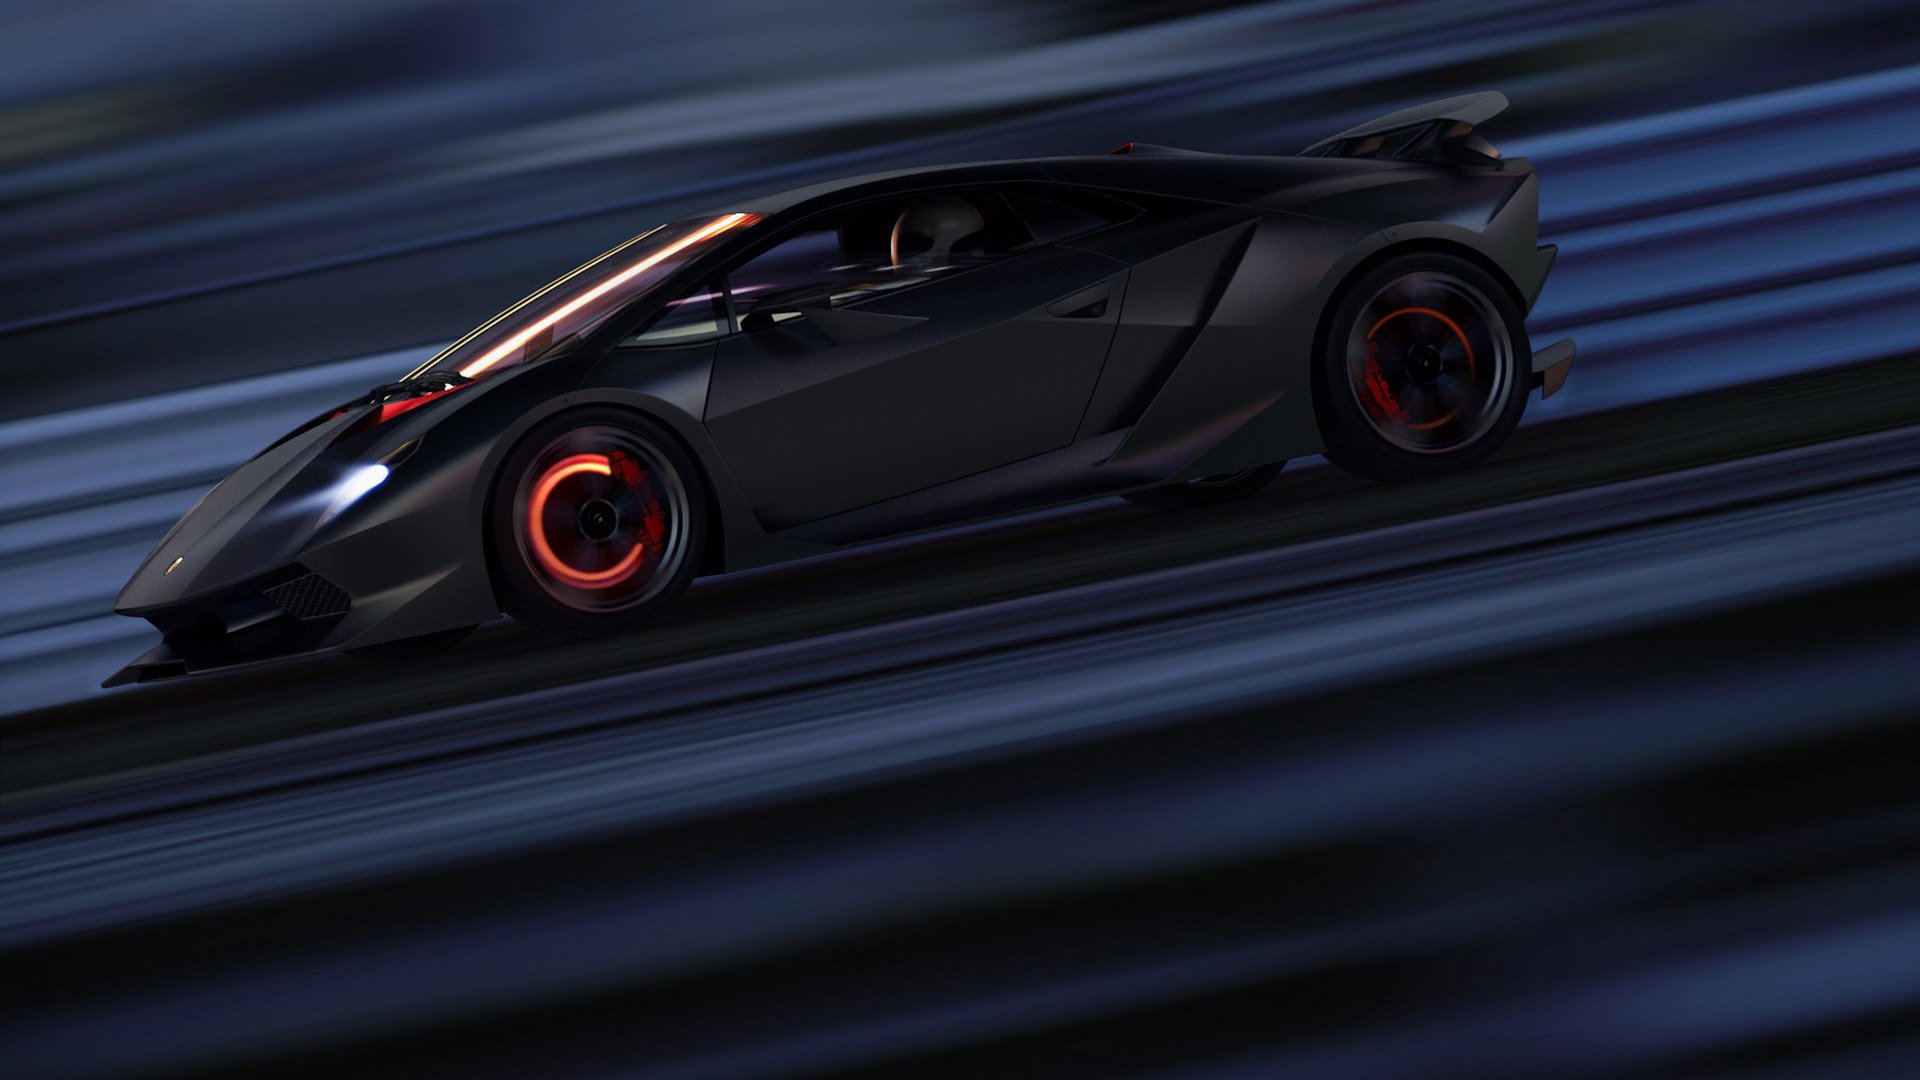 Lamborghini Sesto Elemento HD Wallpaper Background Image